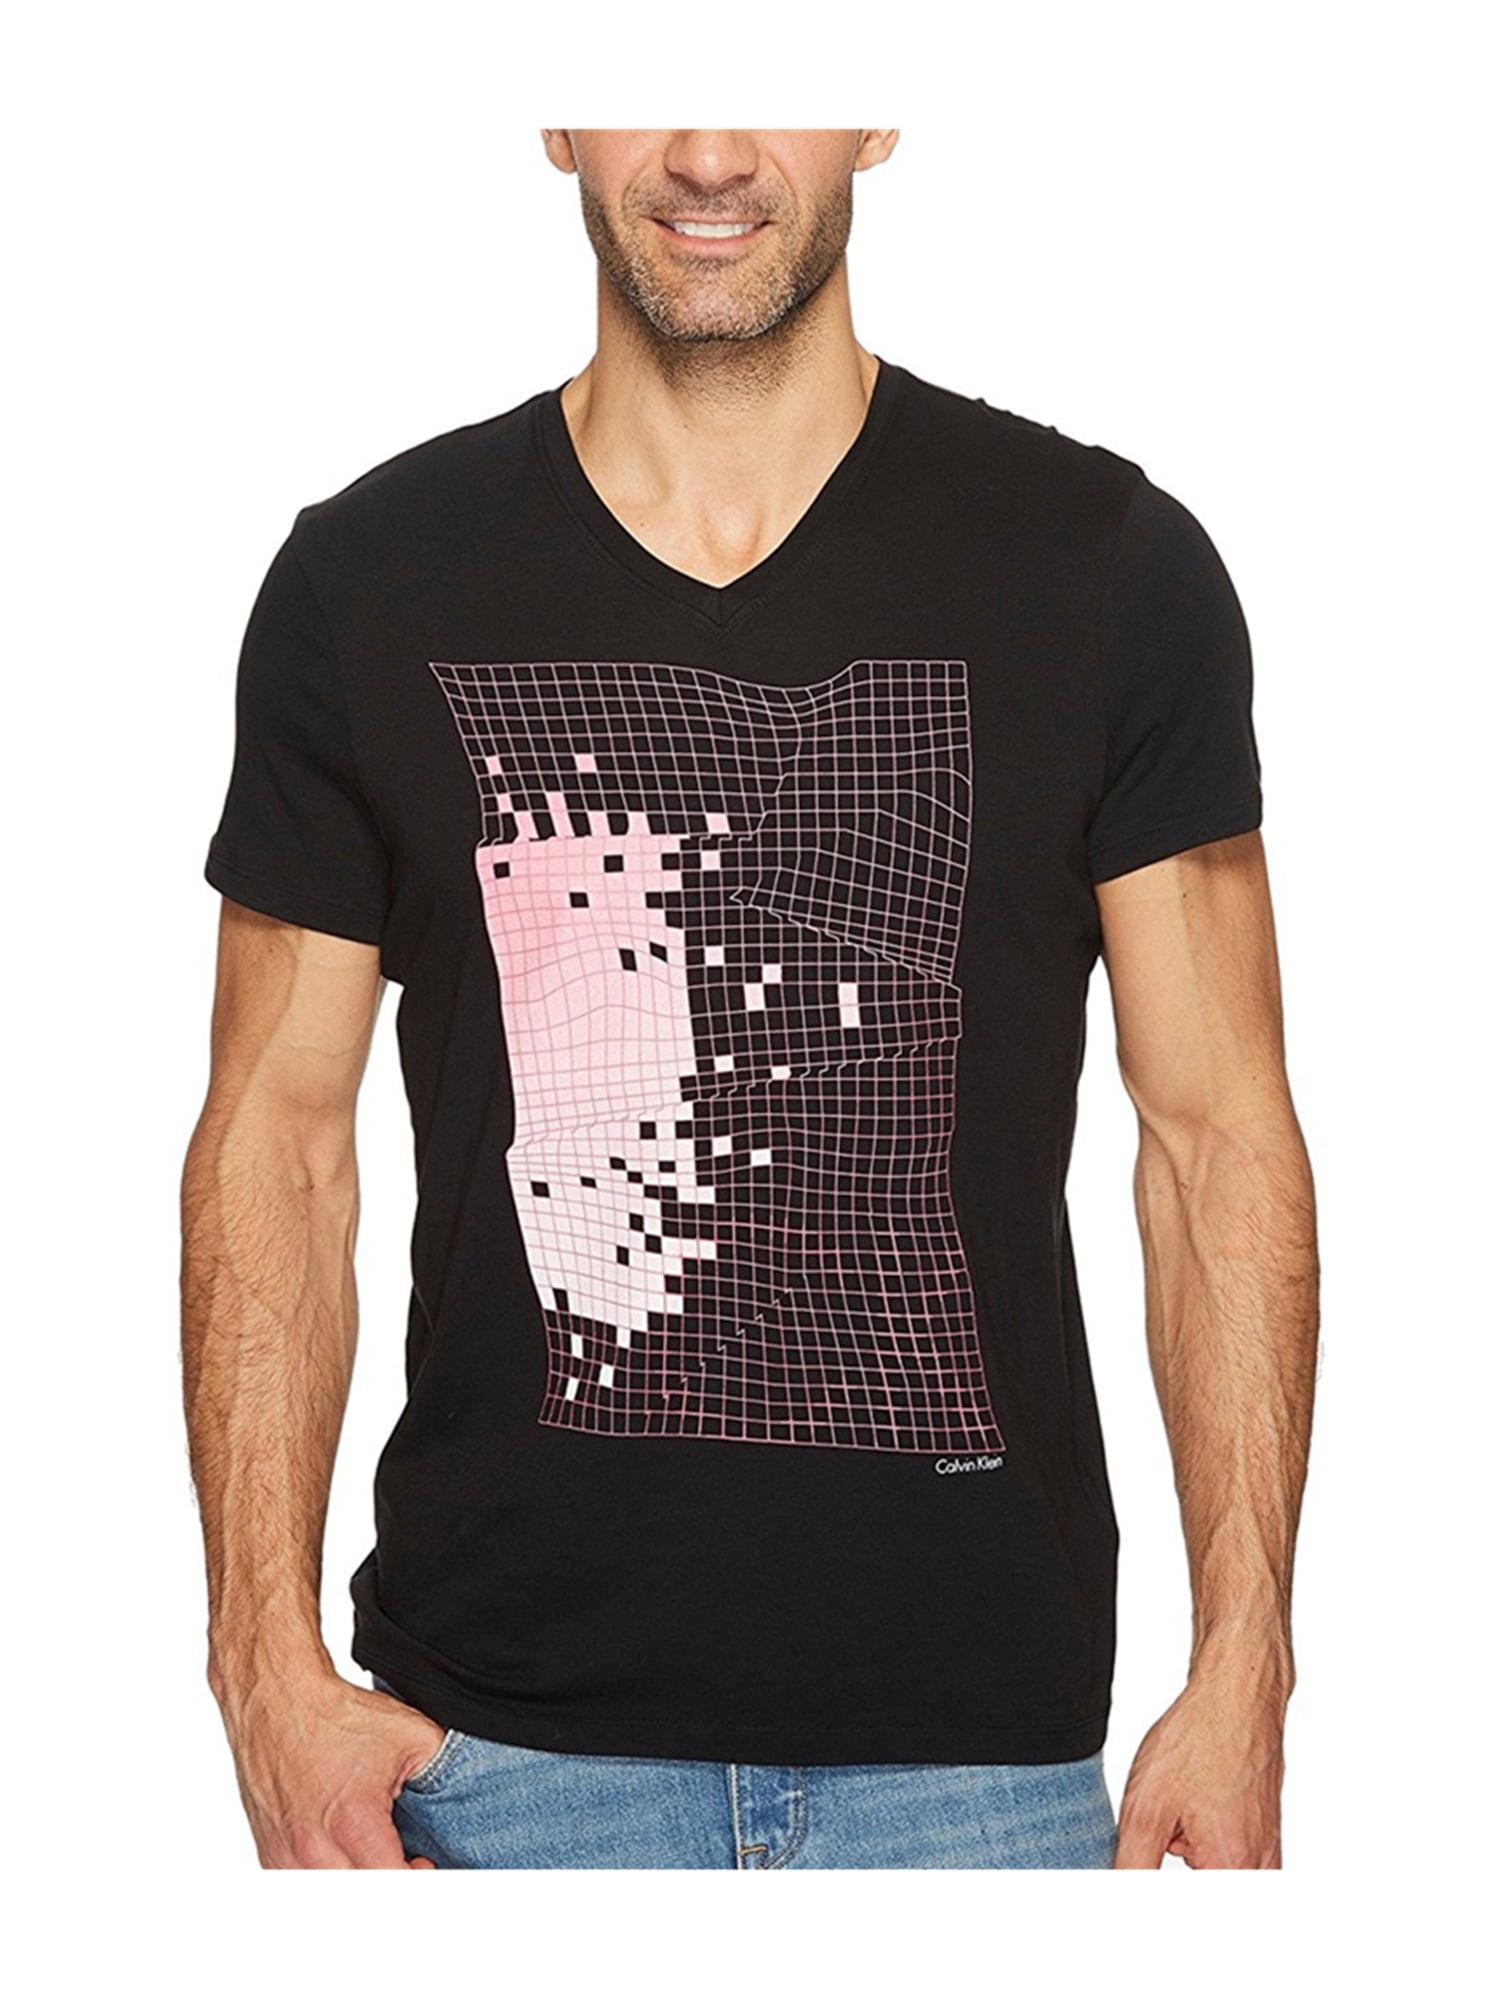 Calvin Klein - Calvin Klein Mens Print Graphic T-Shirt - Walmart.com ...